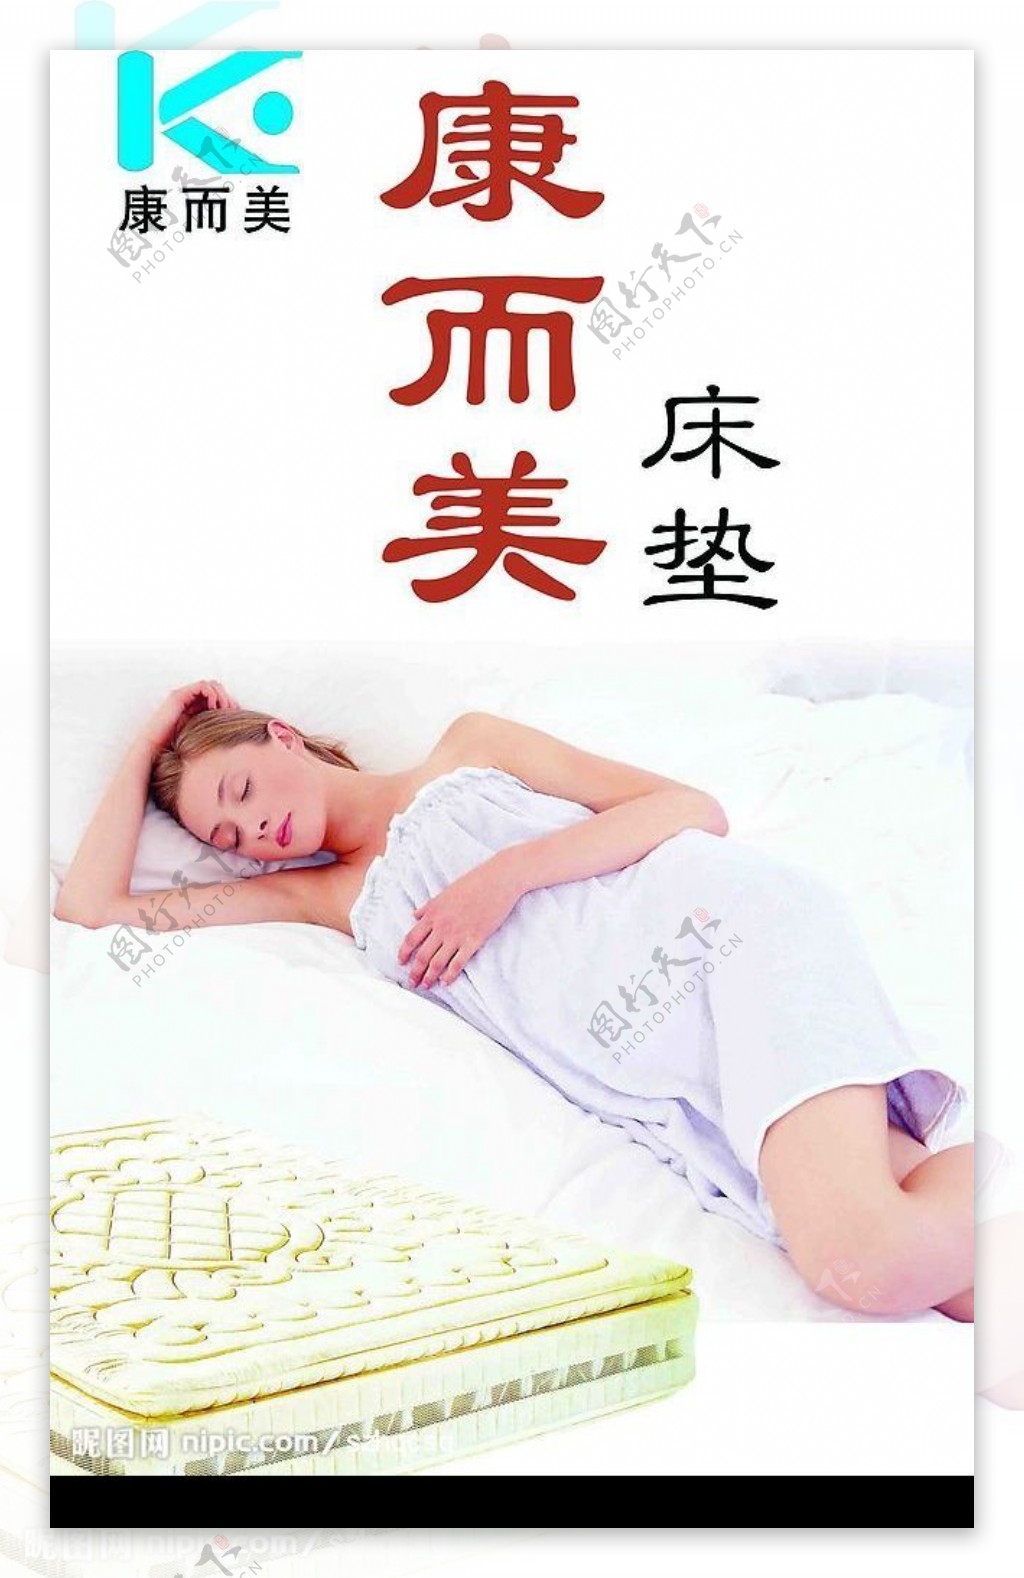 康而美床垫外墙广告PSD分层图片